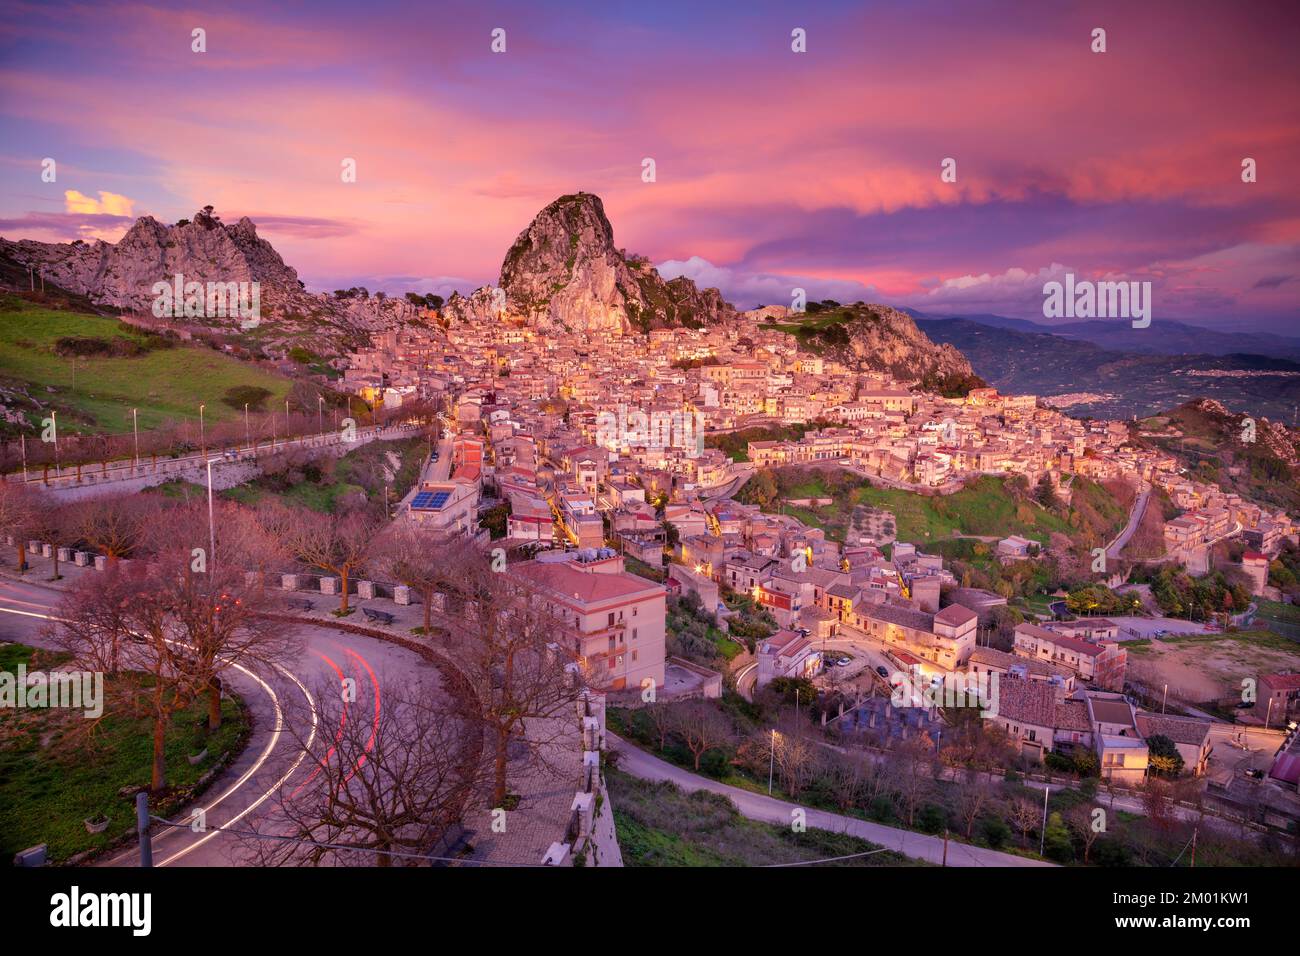 Caltabellotta, Sicilia, Italia. Immagine di paesaggio urbano se Caltabellotta città storica in Sicilia al tramonto drammatico. Foto Stock